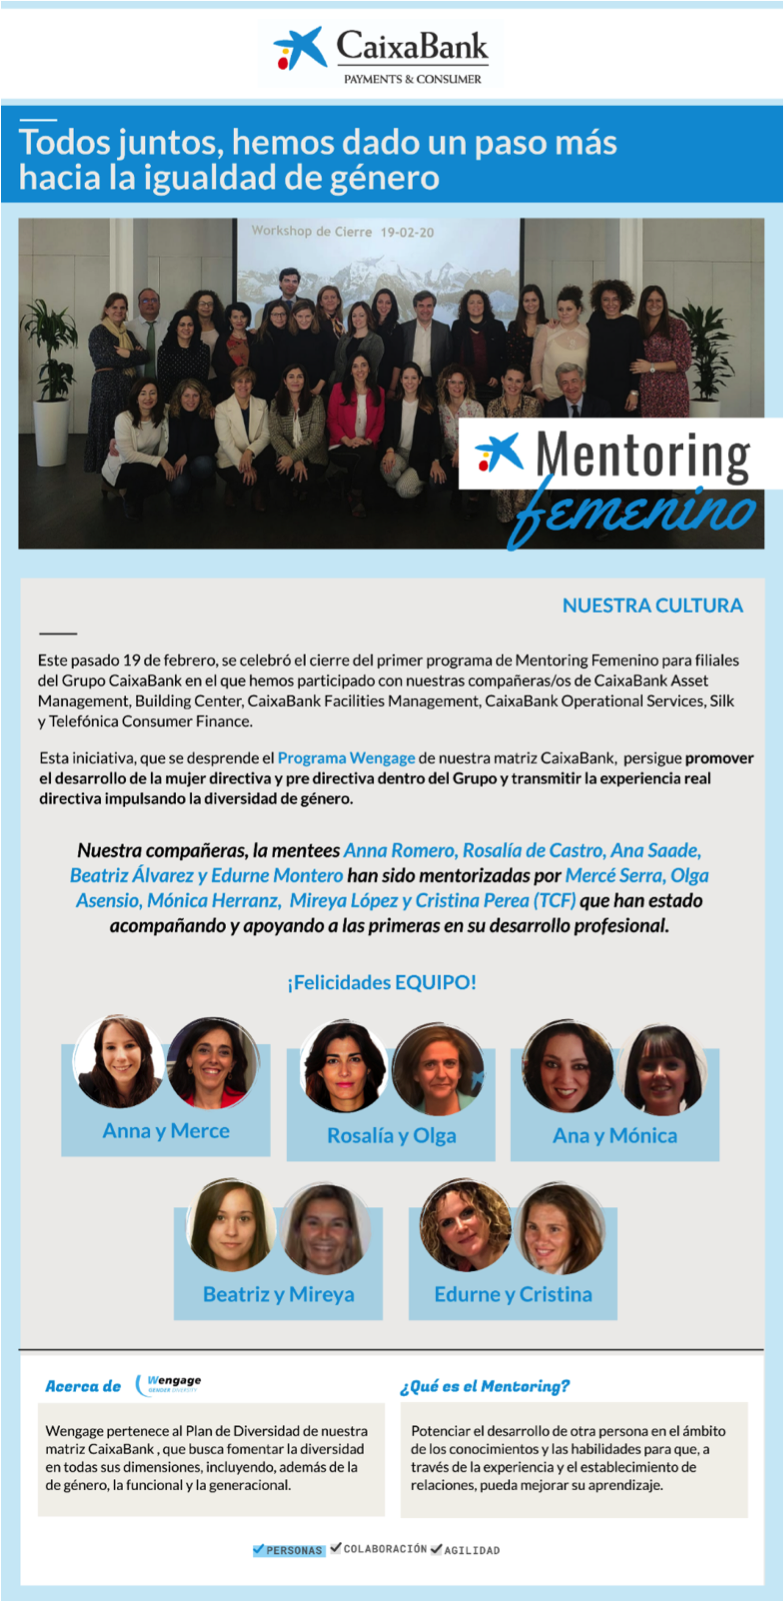 Comprometidos por la igualdad y la transparencia, CaixaBank Payments & Consumer participa en el primer programa de Mentoring Femenino